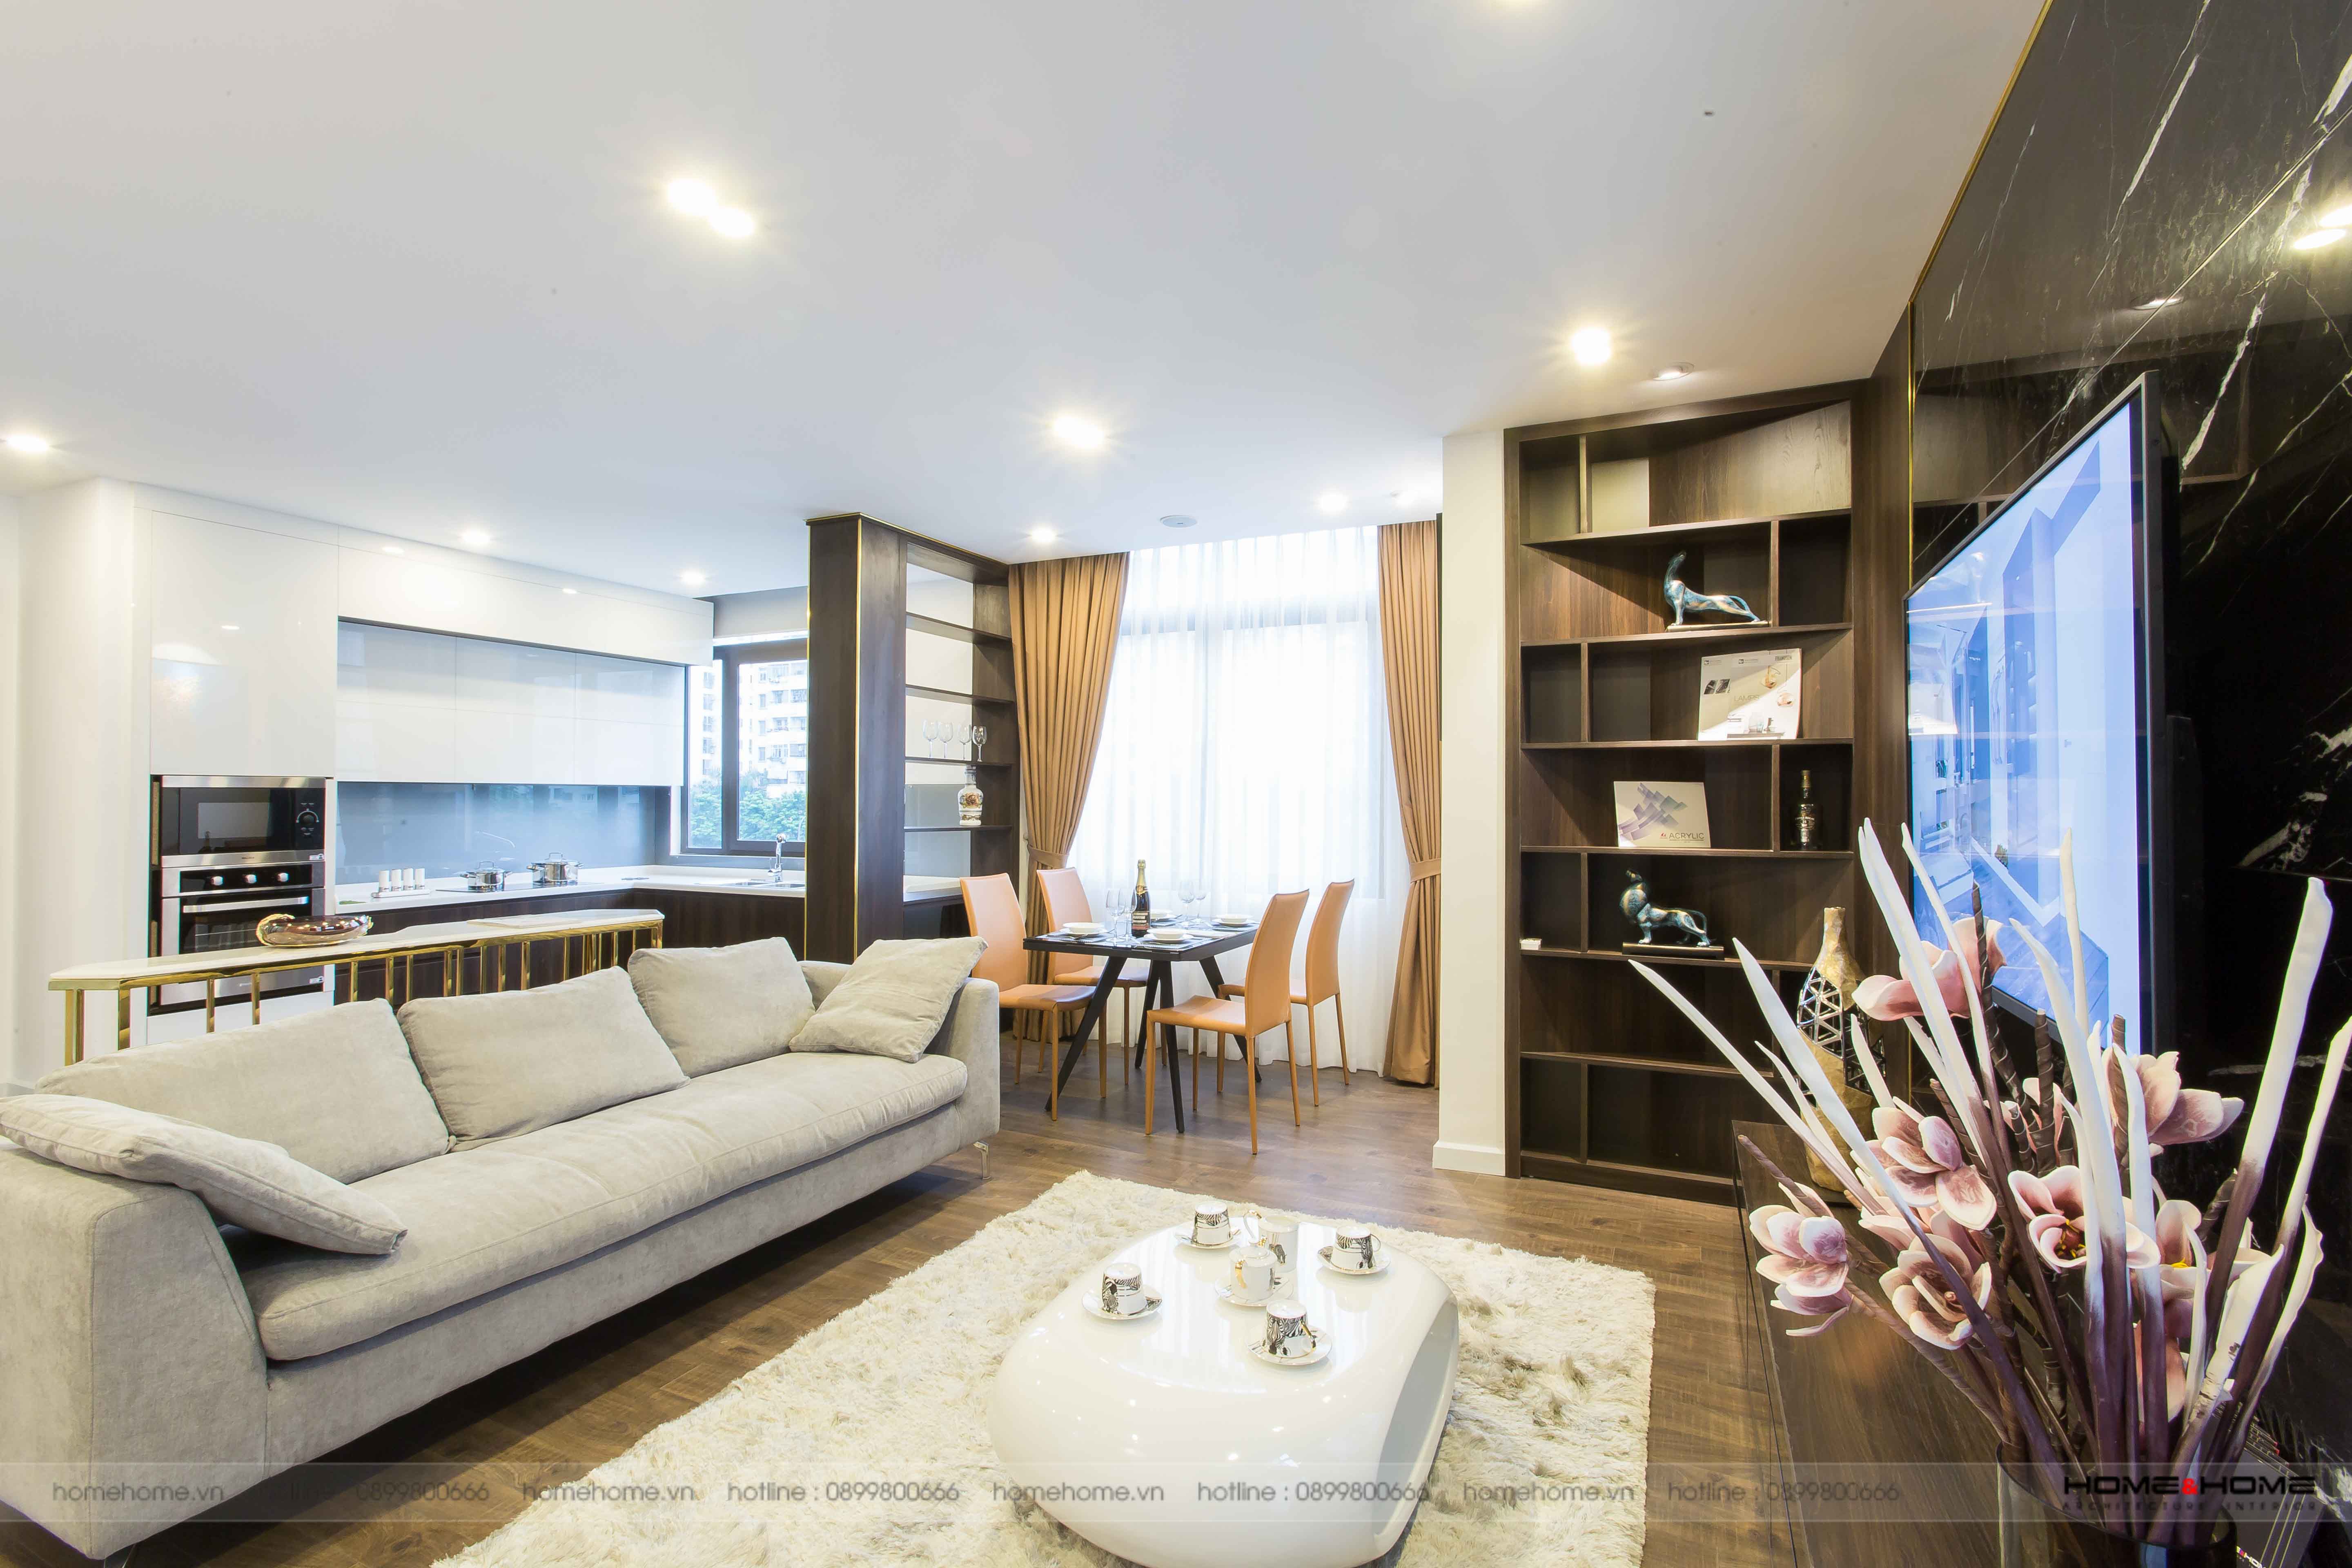 Showroom nội thất cao cấp Home&Home tại Hà Nội dành cho những ai tìm kiếm không gian trang trí sành điệu và đẳng cấp. Tận hưởng không gian sống hiện đại và sang trọng với những sản phẩm nội thất đẹp nhất.